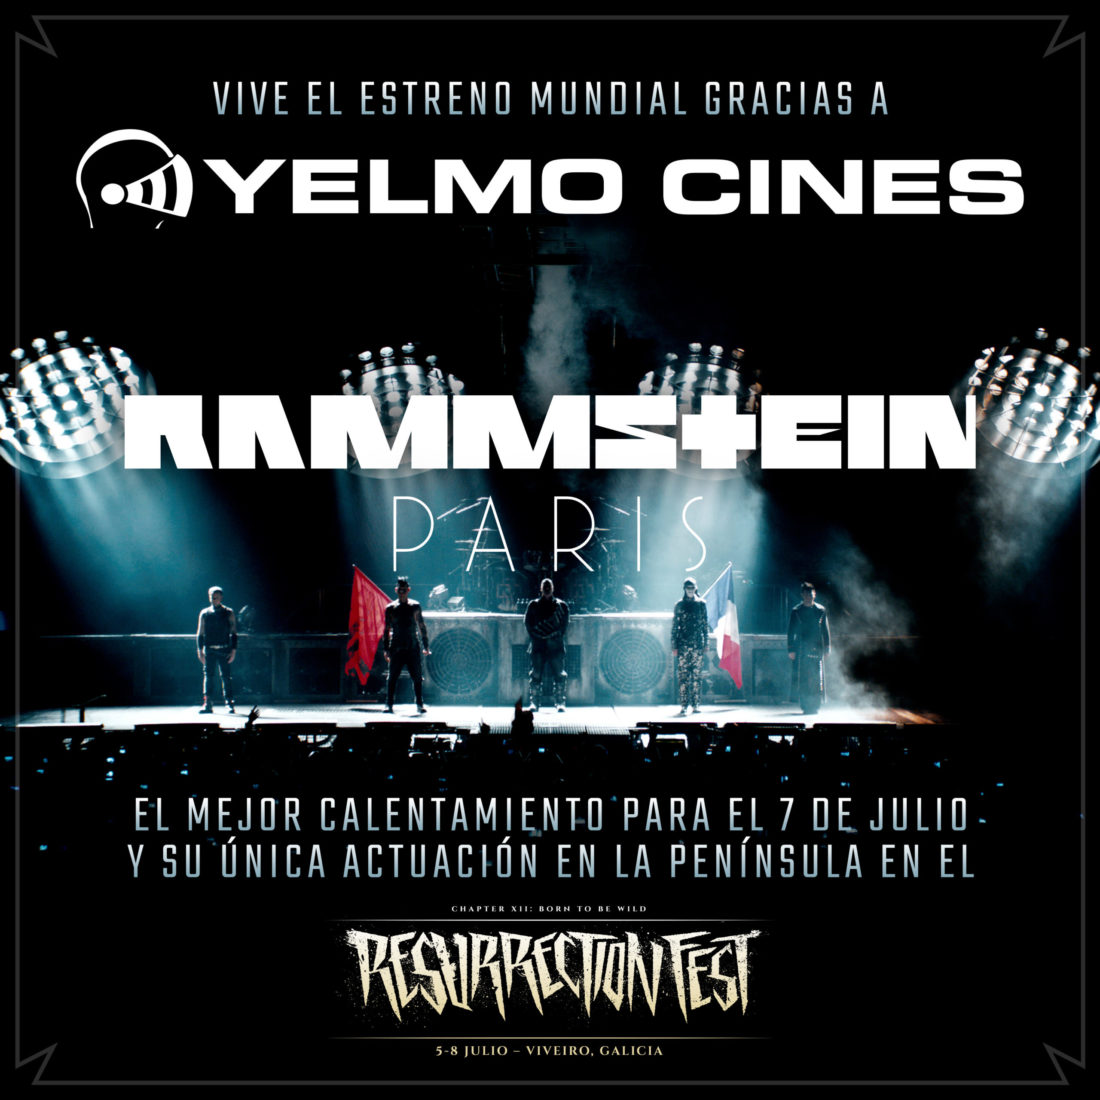 Calienta para el Resurrection Fest con Yelmo Cines y «Rammstein Paris»